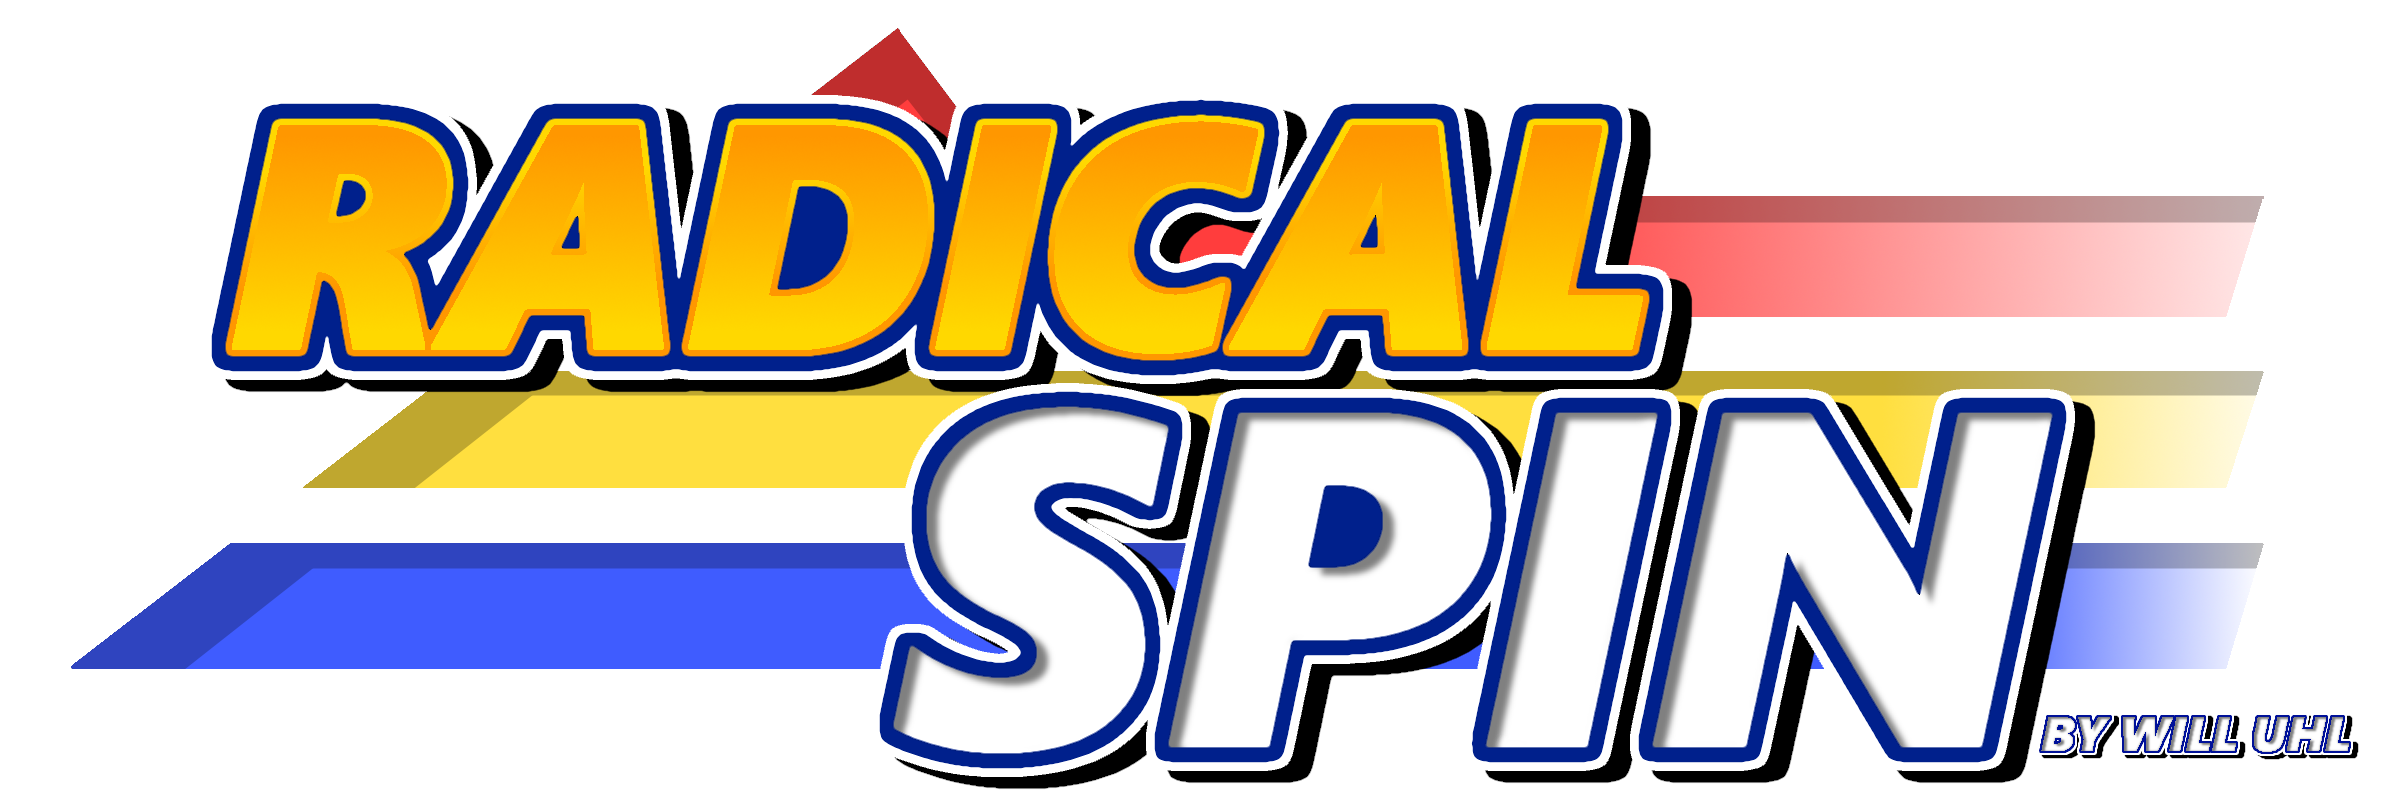 Radical Spin